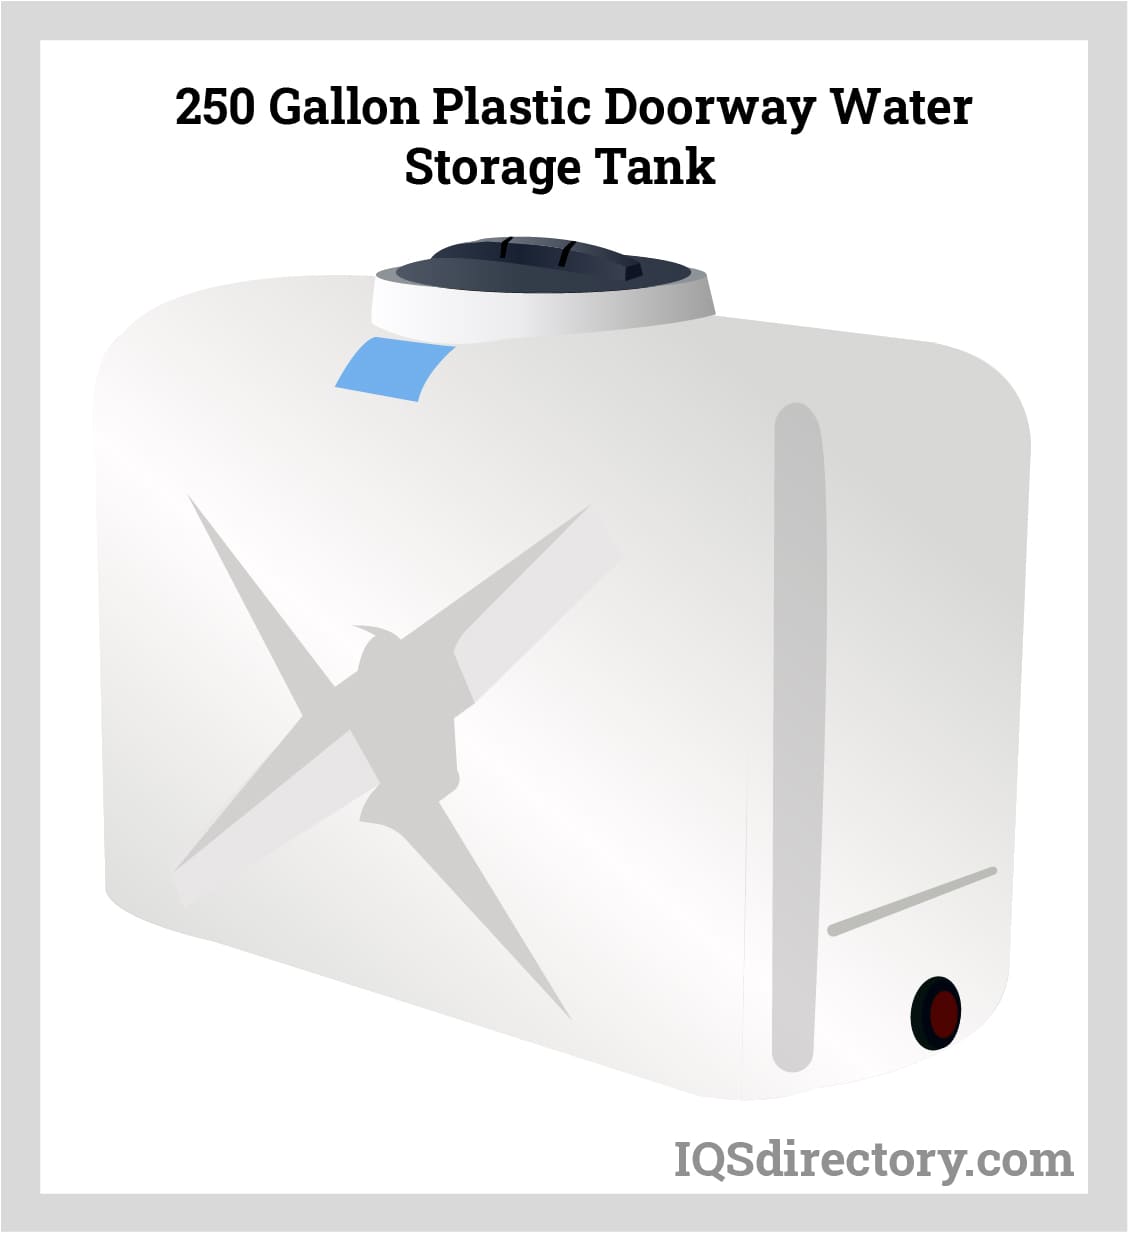 250 Gallon Plastic Doorway Water Storage Tank